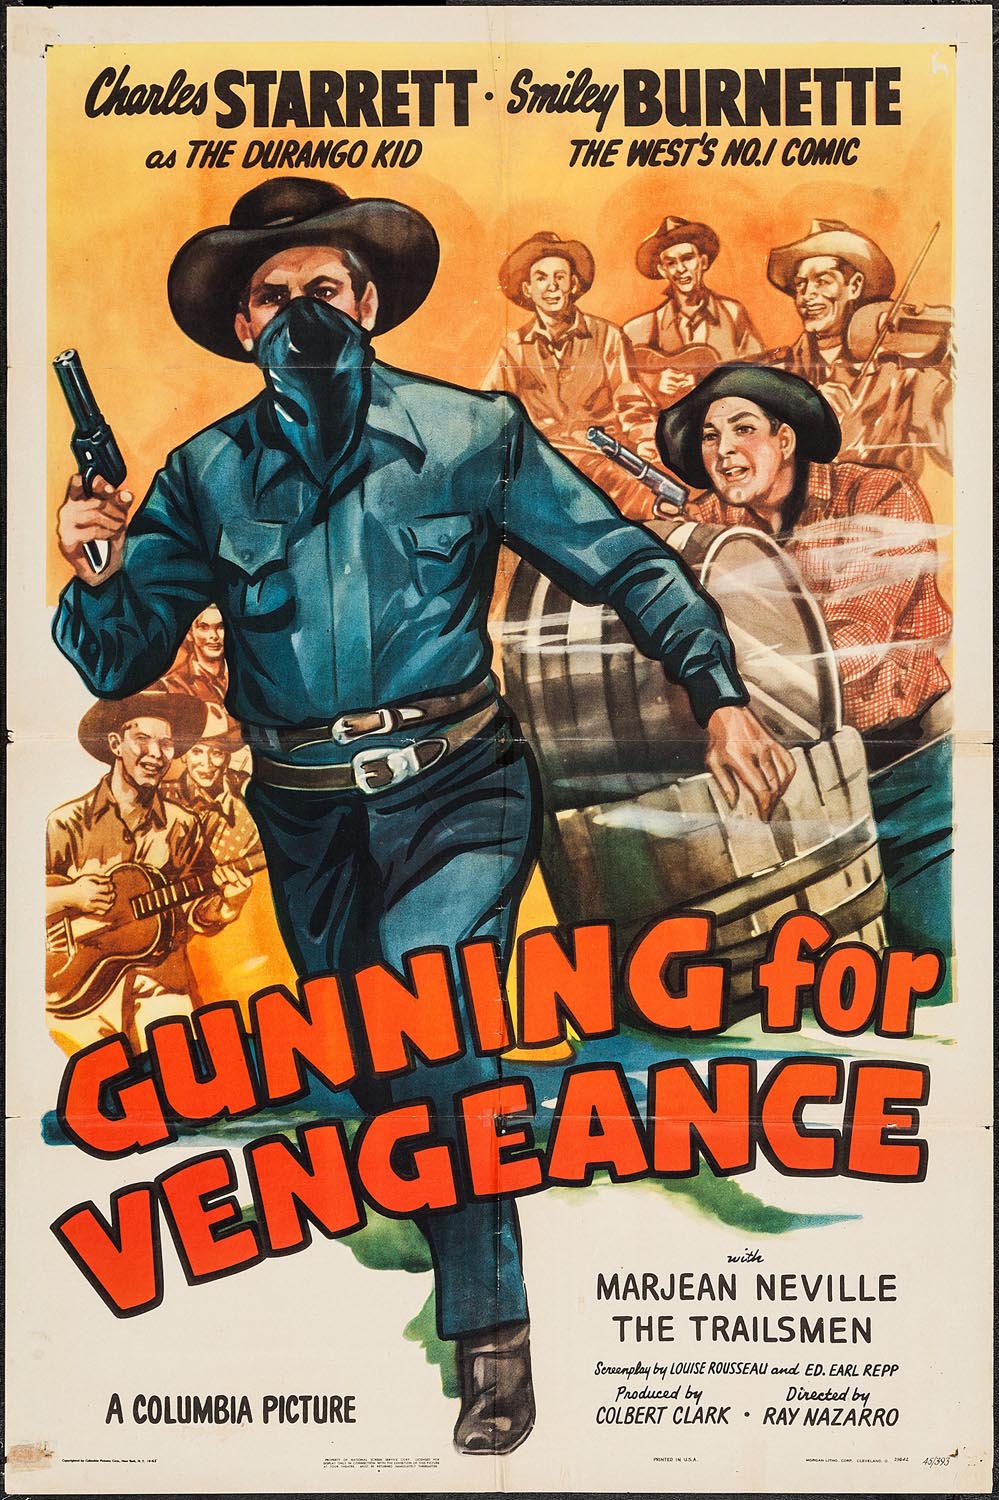 GUNNING FOR VENGEANCE